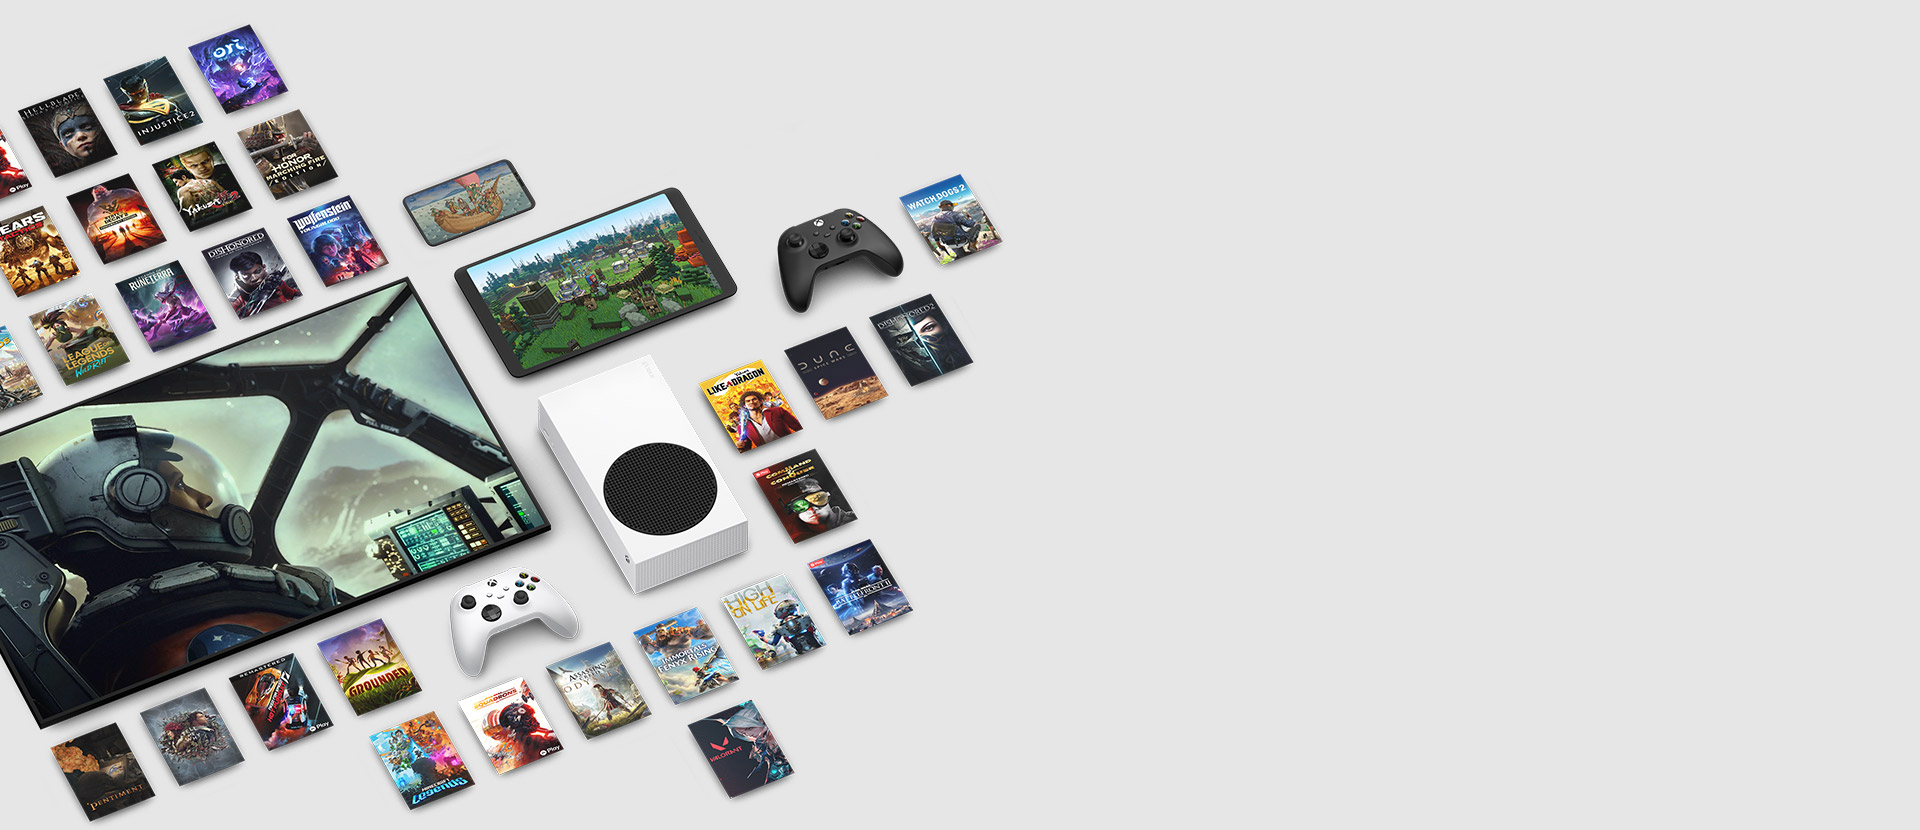 Spillillustrasjoner fra flere spill som nå er tilgjengelig med Xbox Game Pass Ultimate plassert rundt flere enheter, inkludert en konsoll, mobiltelefon, nettbrett, smart-TV og kontrollere.